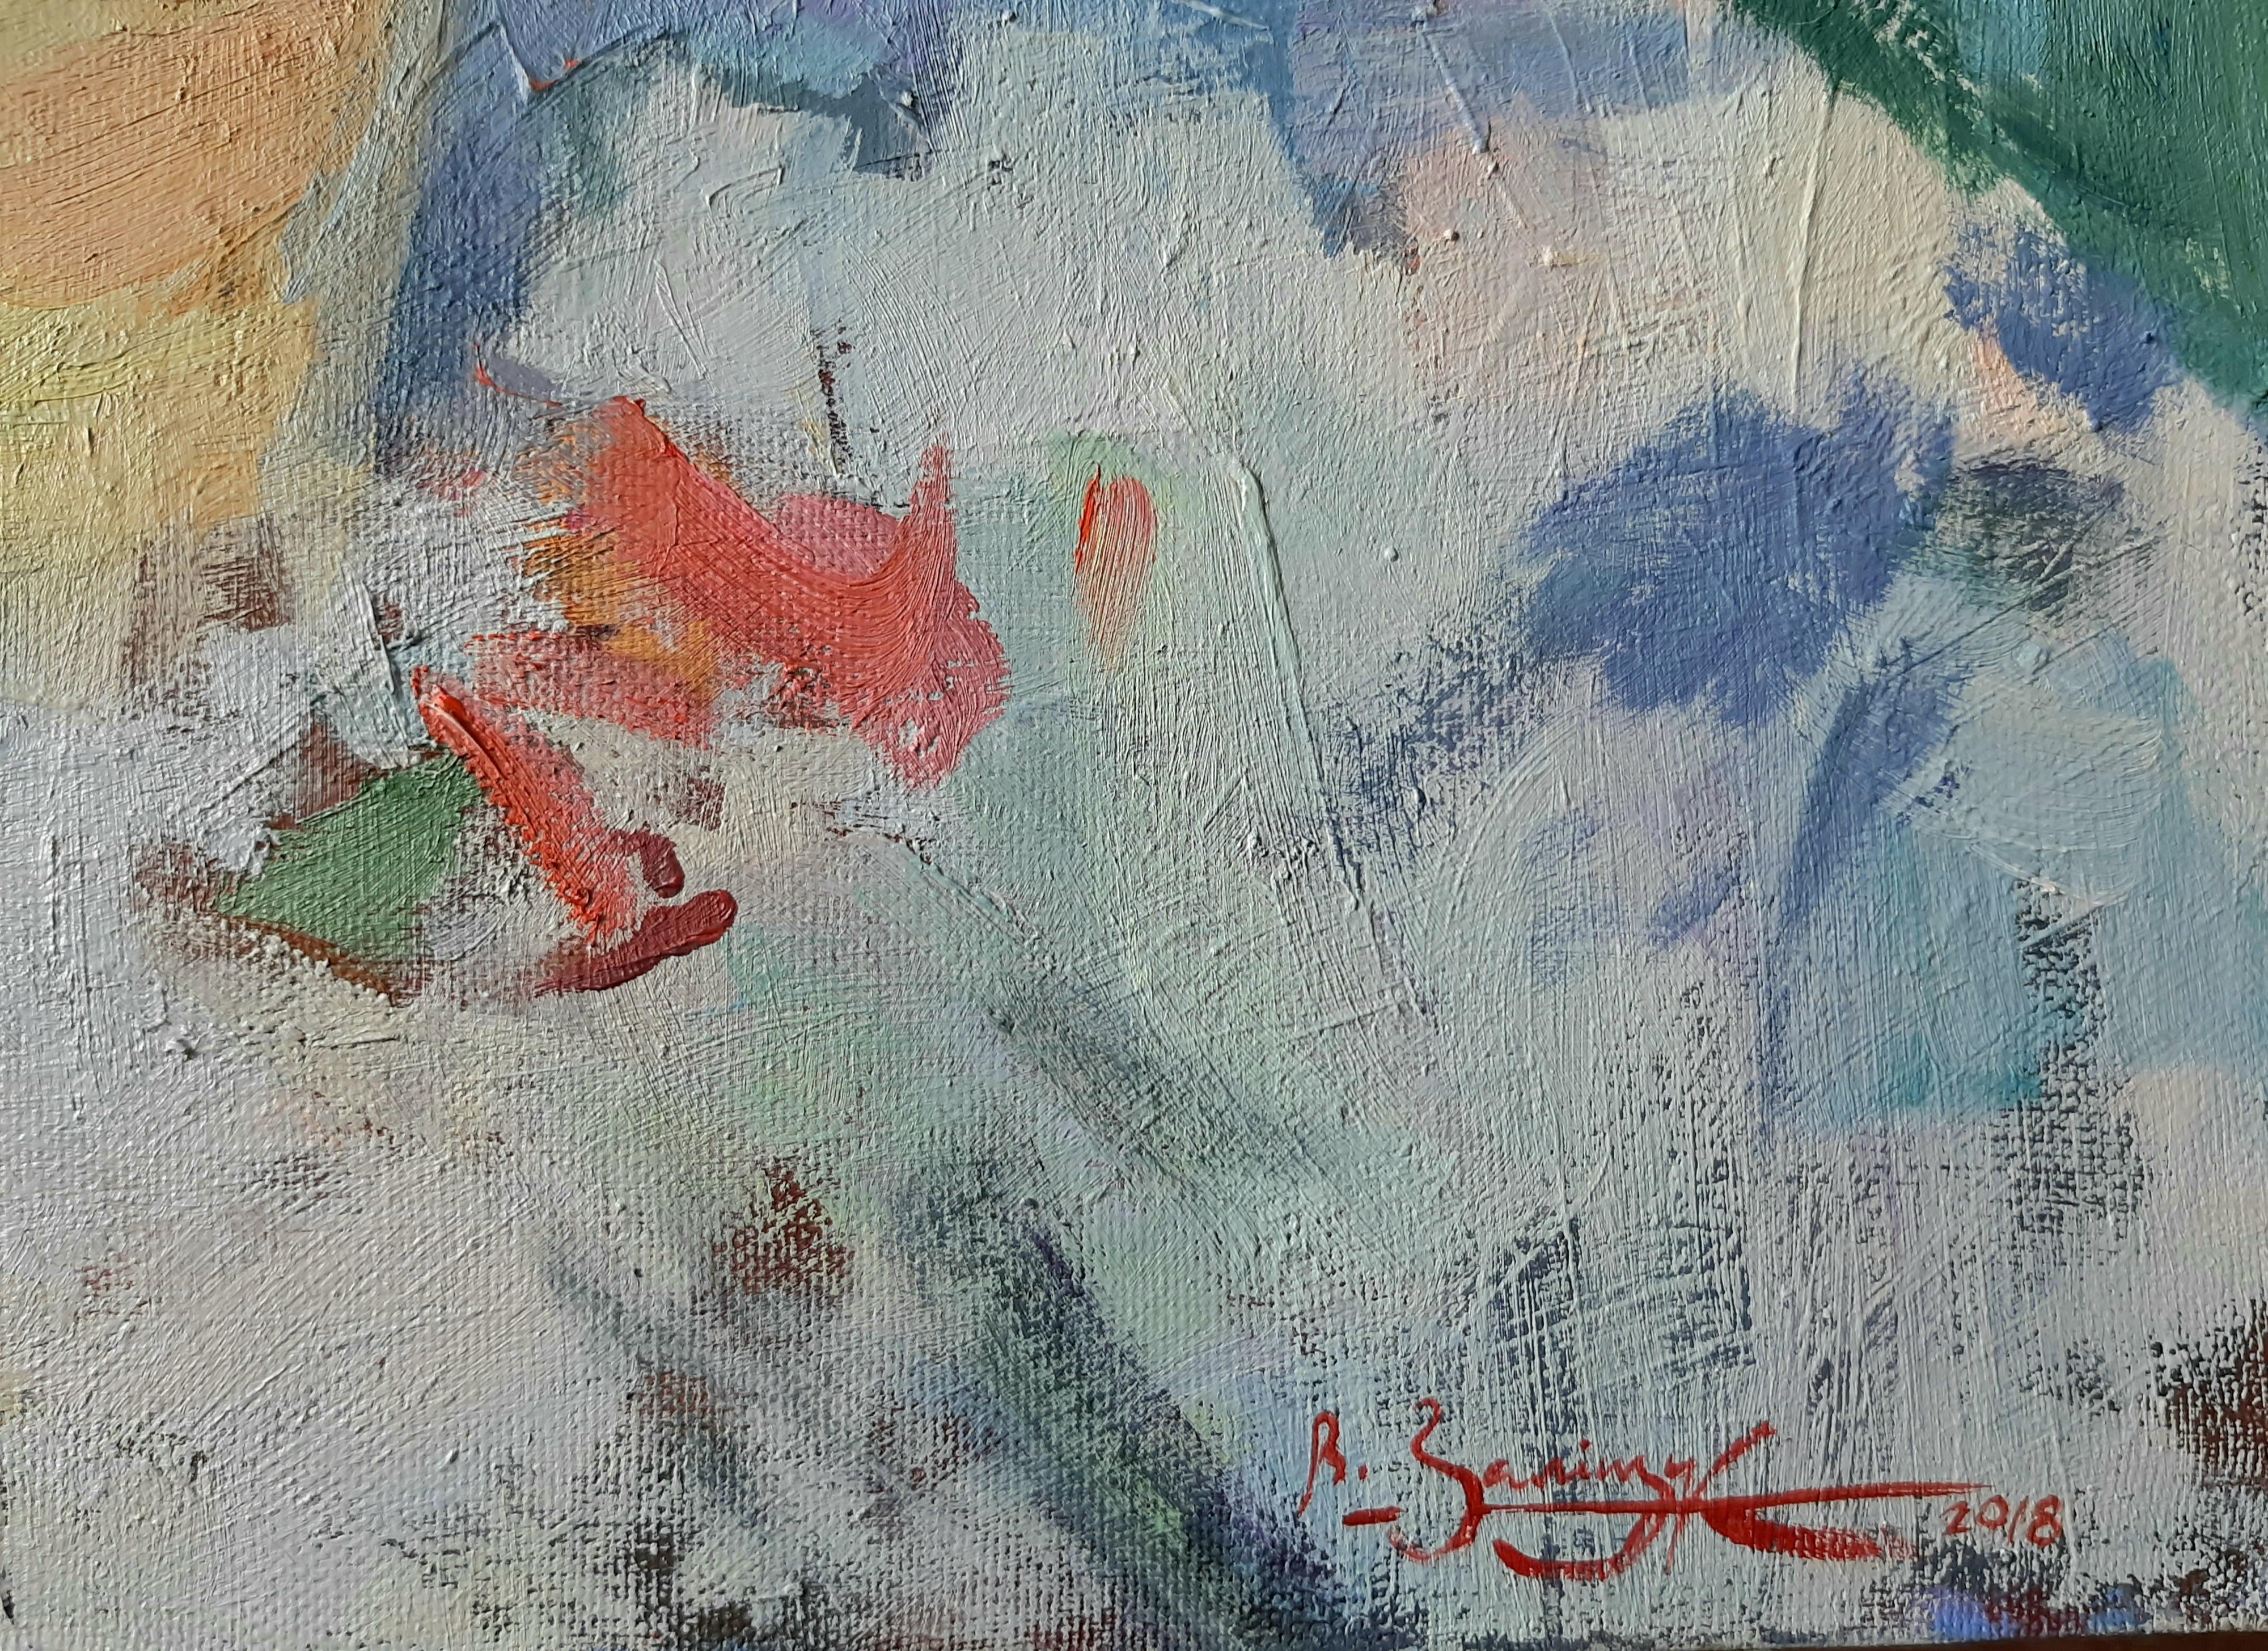 July Roses - Stillleben, Ölgemälde auf Leinwand in Rot, Blau, Gelb, Grün, Weiß und Lila (Grau), Still-Life Painting, von Valeriy Zalishchuk